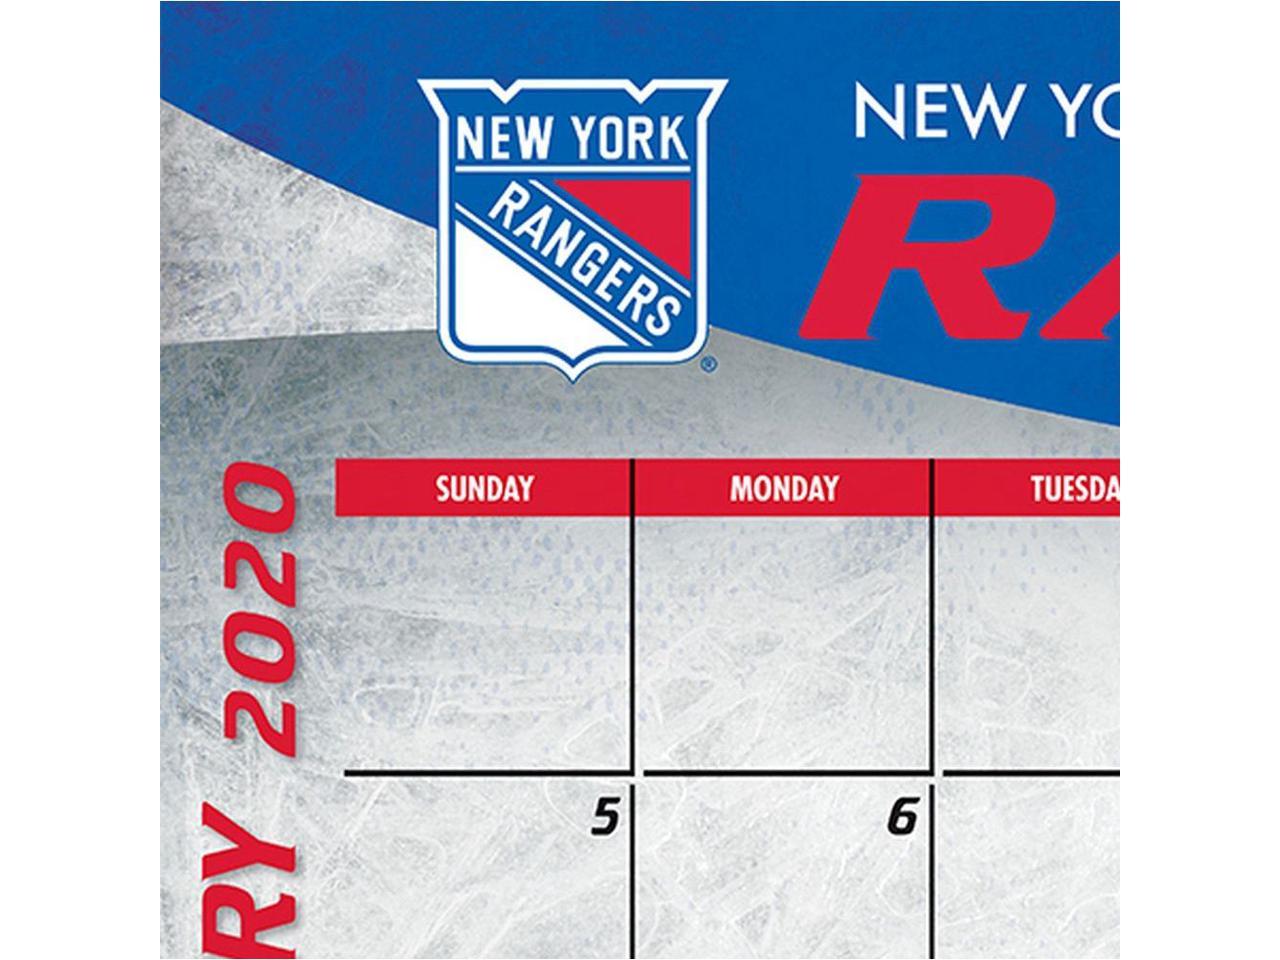 2020 New York Rangers Desk Calendar Turner Licensing